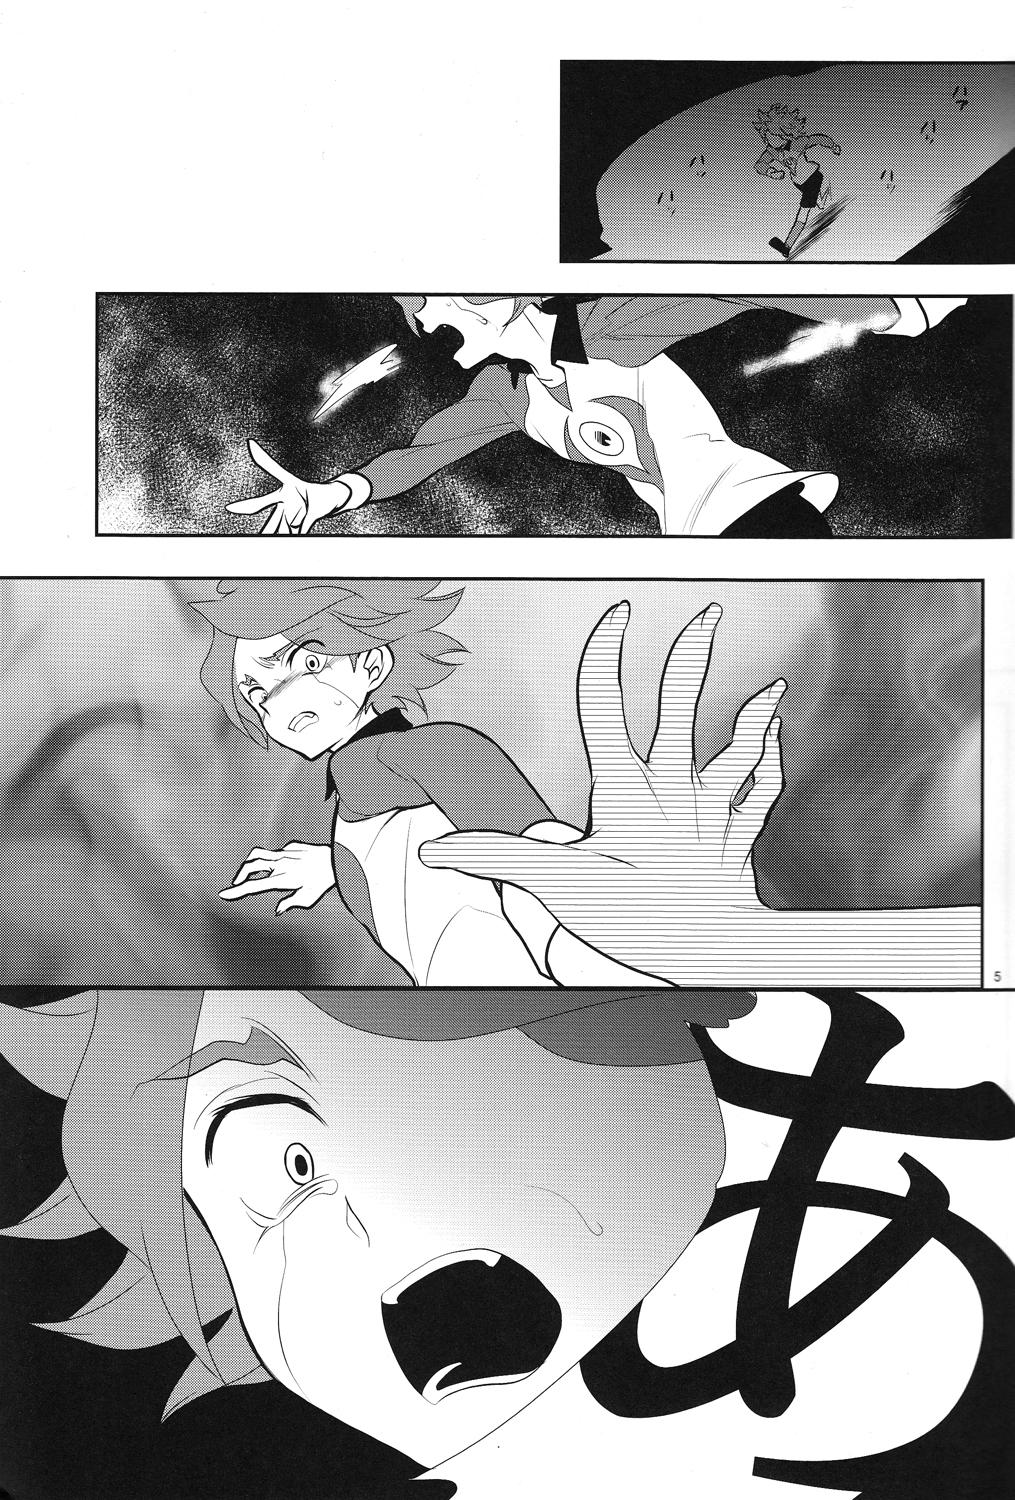 Hardcore Oishii! NAGMILK - Inazuma eleven Fingering - Page 4